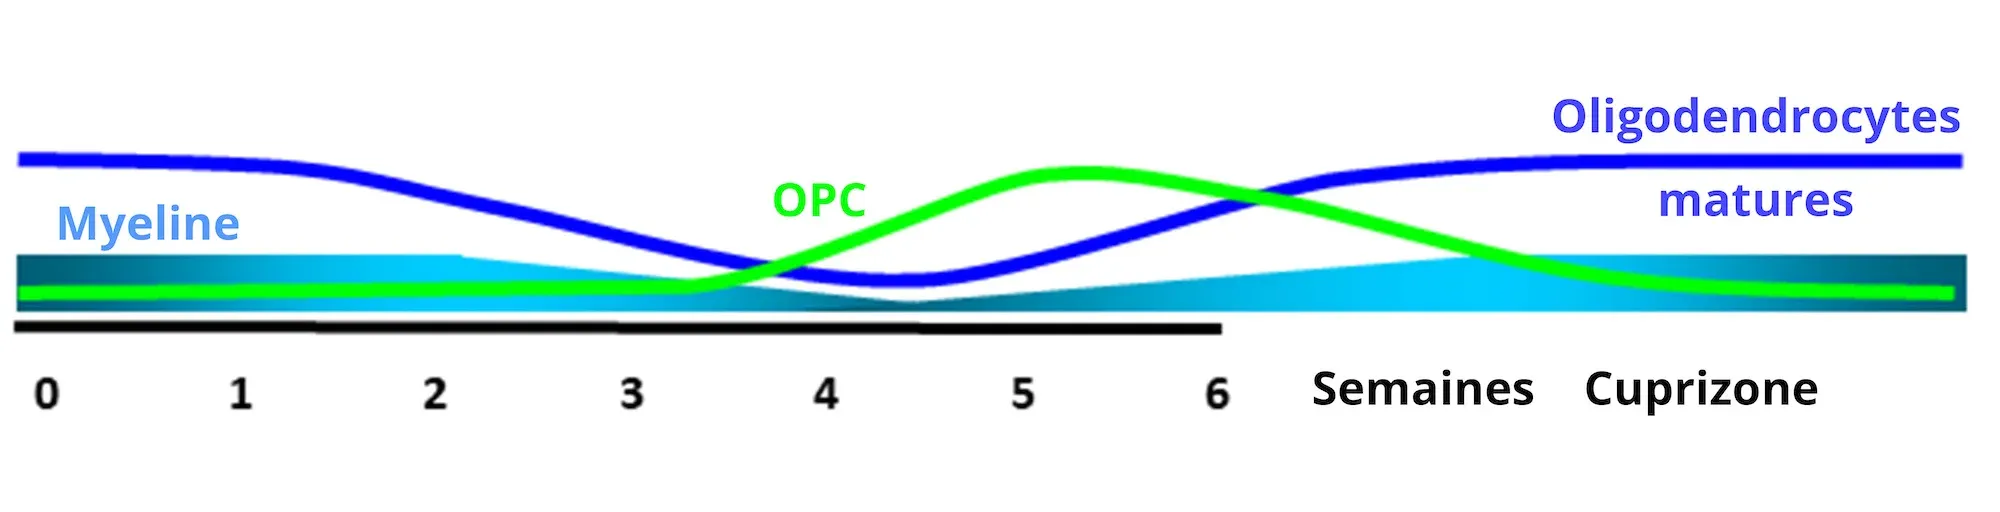 Graphique de l'évolution temporelle de la myéline à la Cuprizone